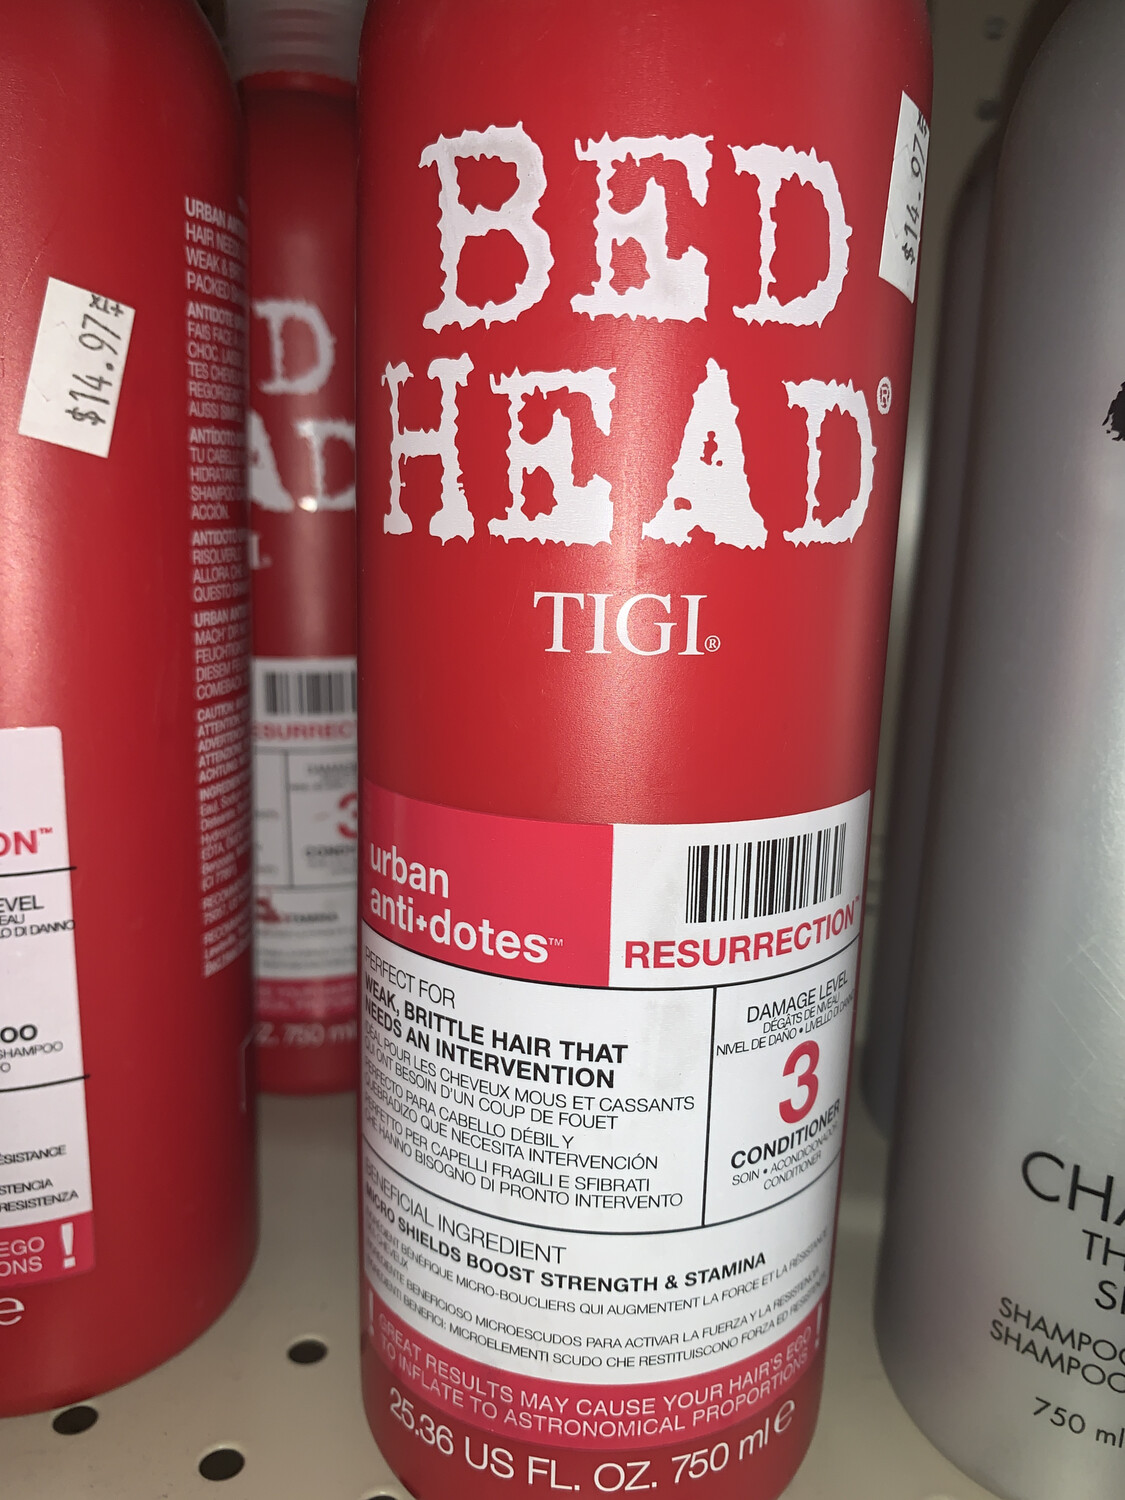 Bed Head Tigi 3 Conditioner 26.36 Fl Oz